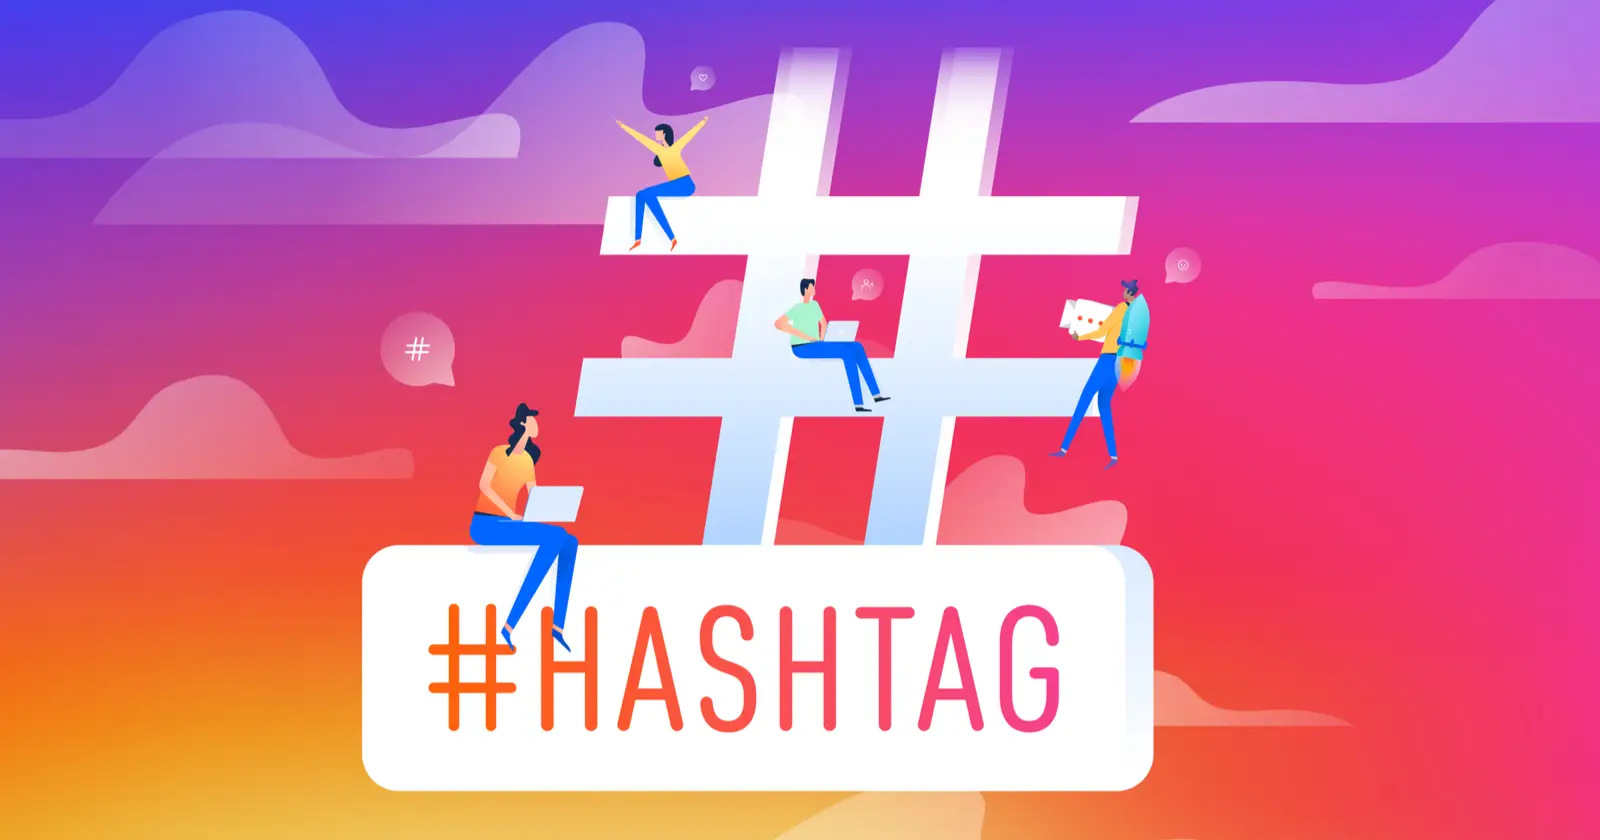 Use proper hashtags